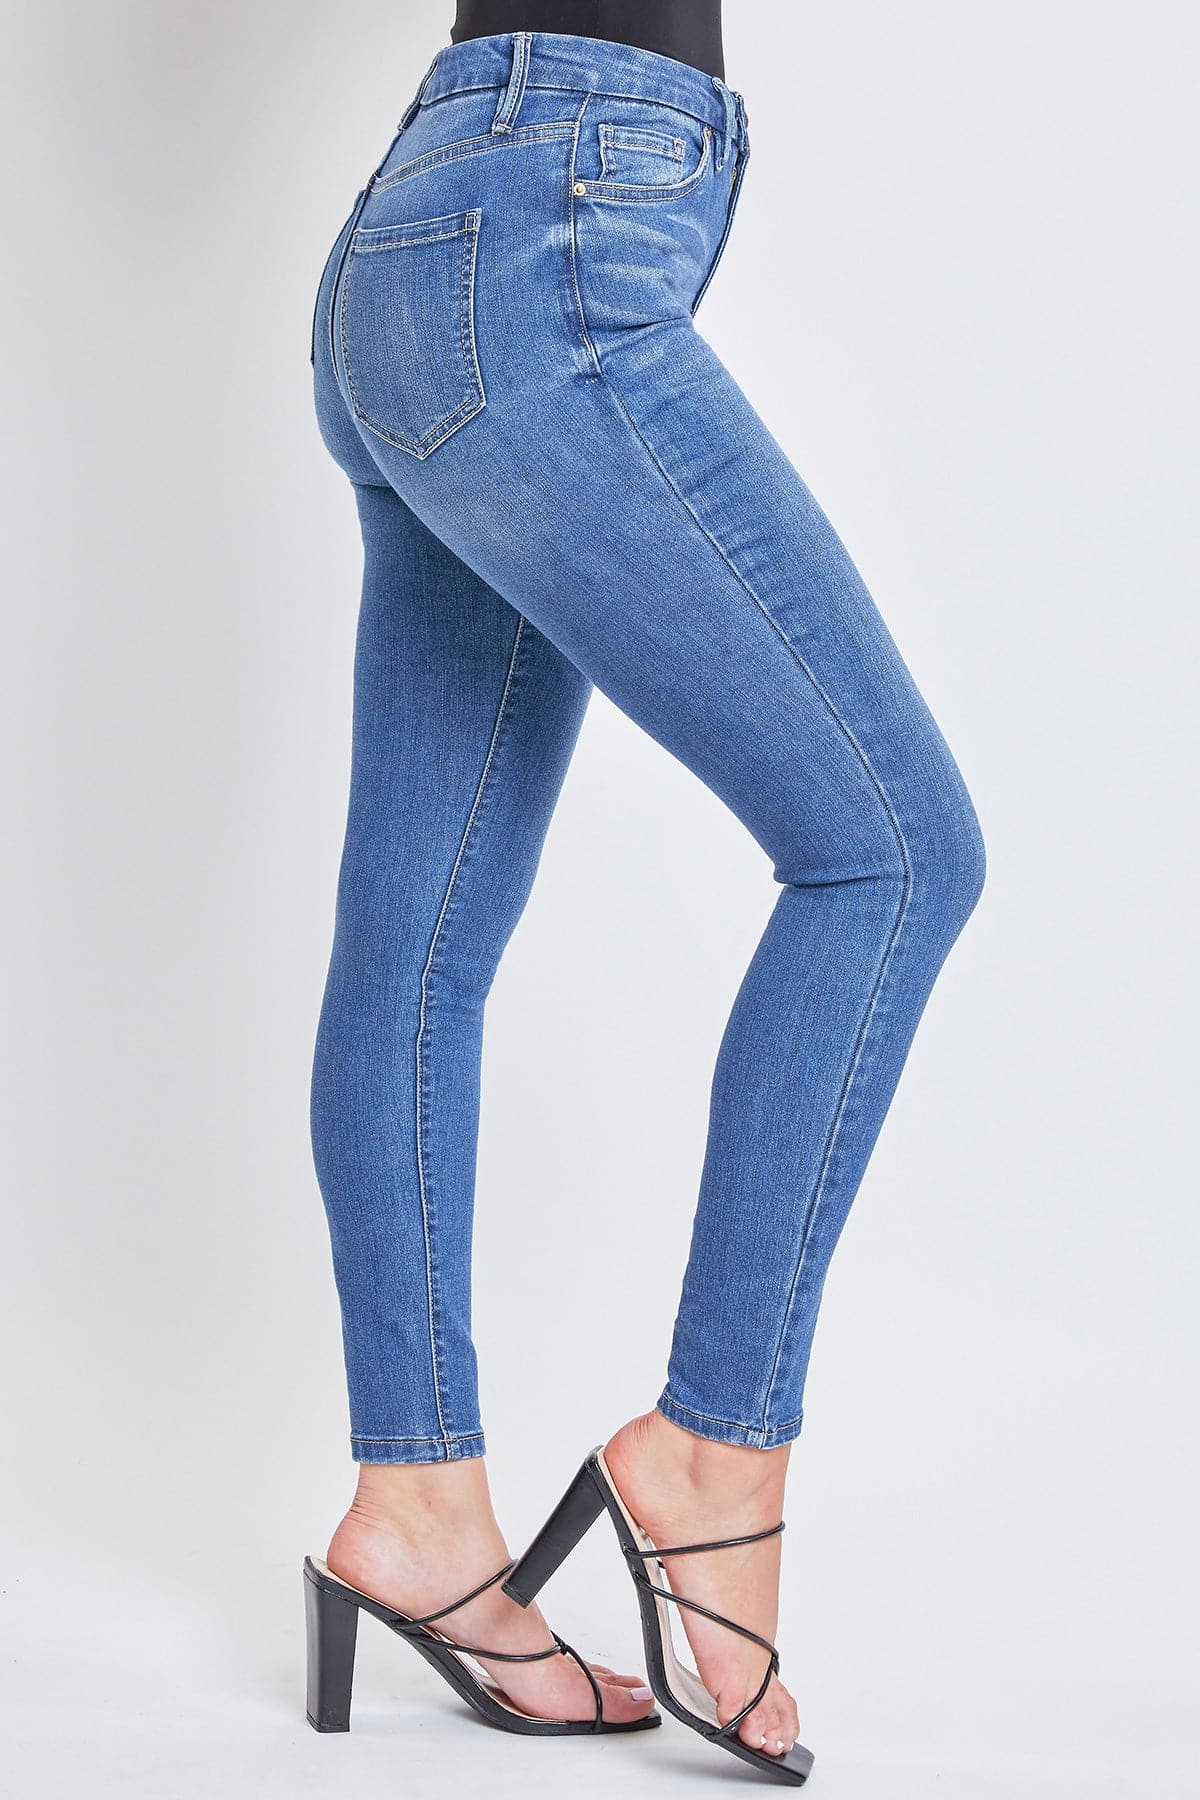 Women’s Curvy Fit  Skinny Jeans